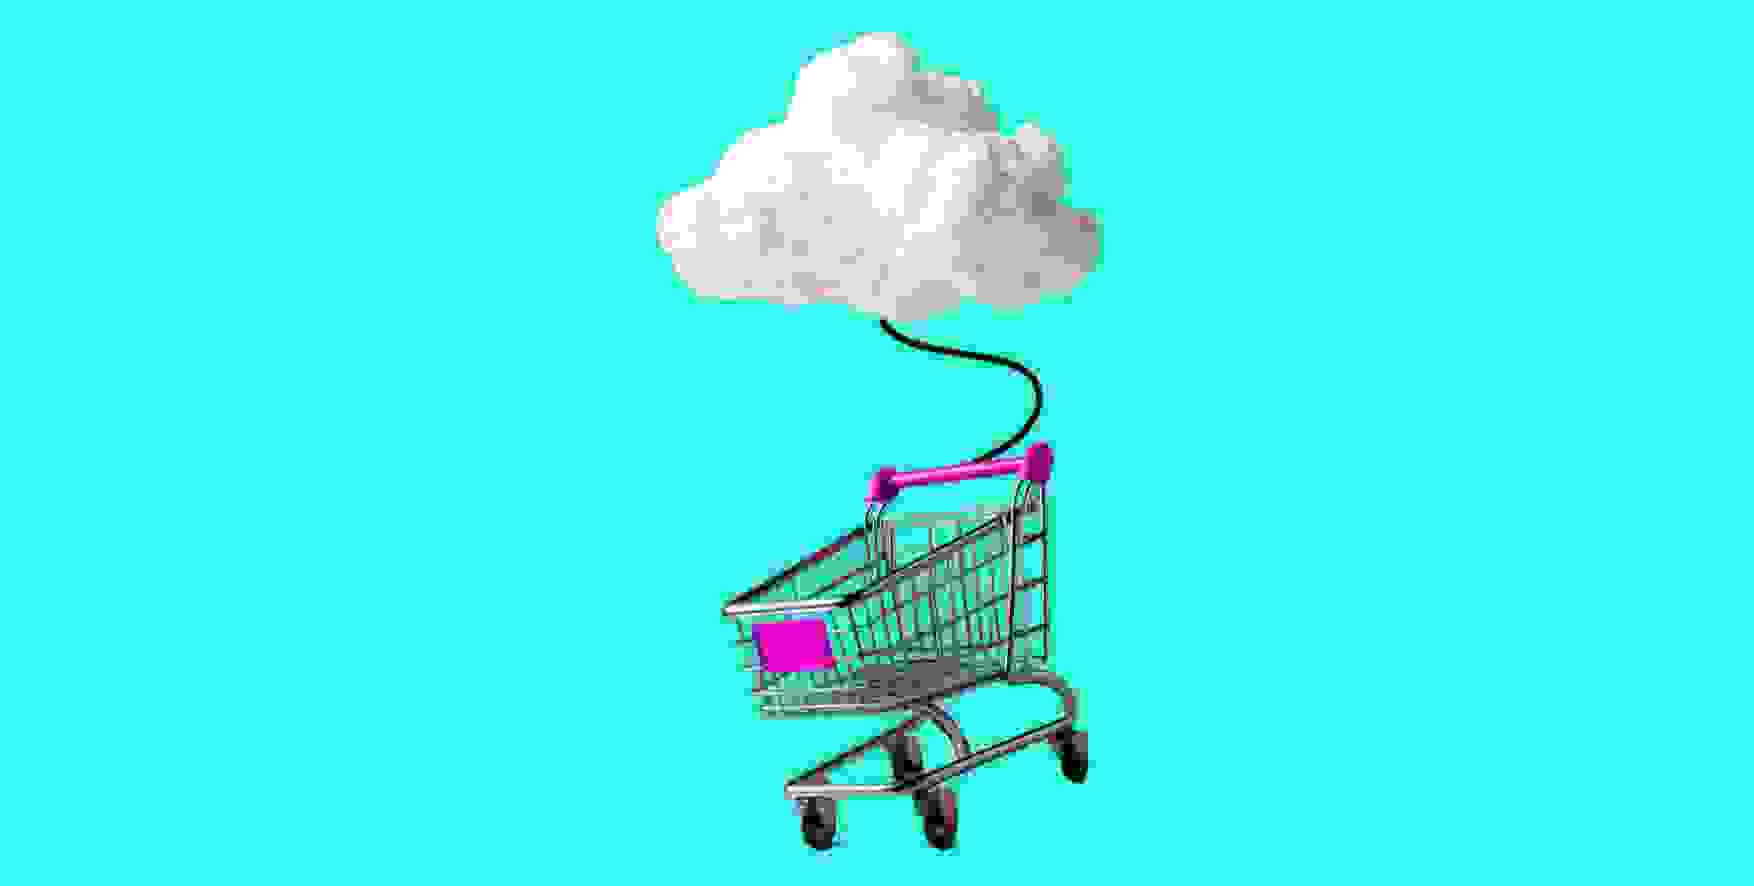 a shopping cart hanging under a cloud